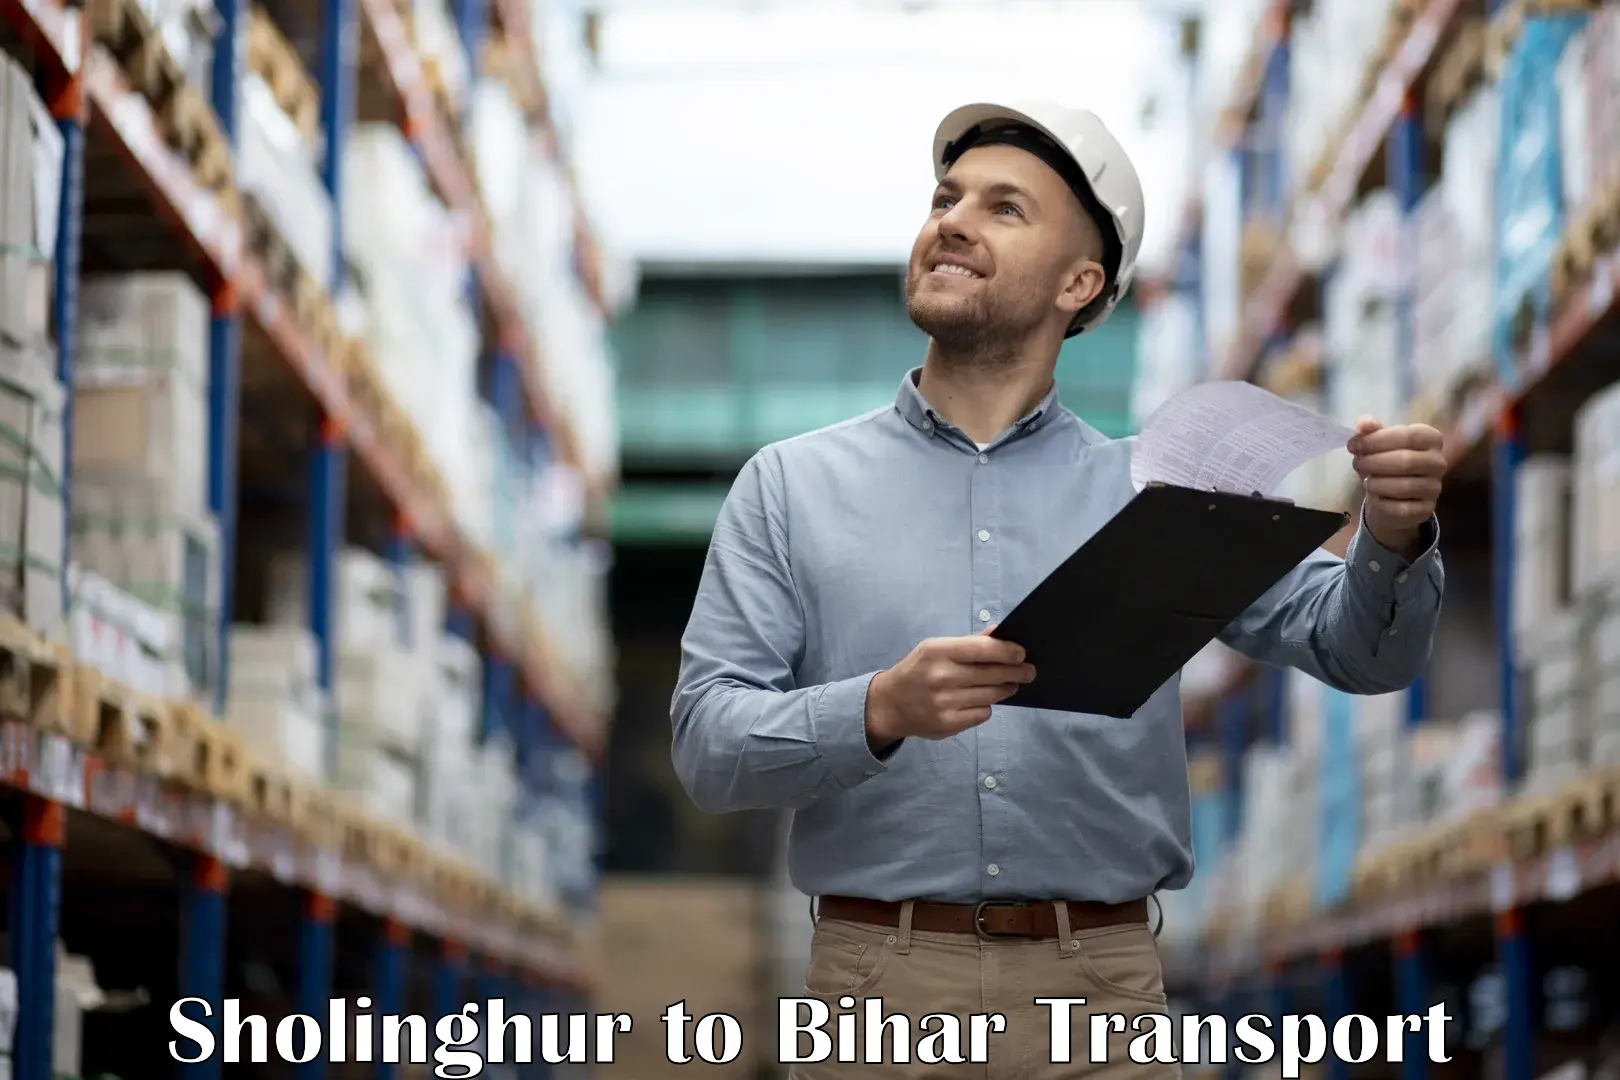 Pick up transport service Sholinghur to Bihar